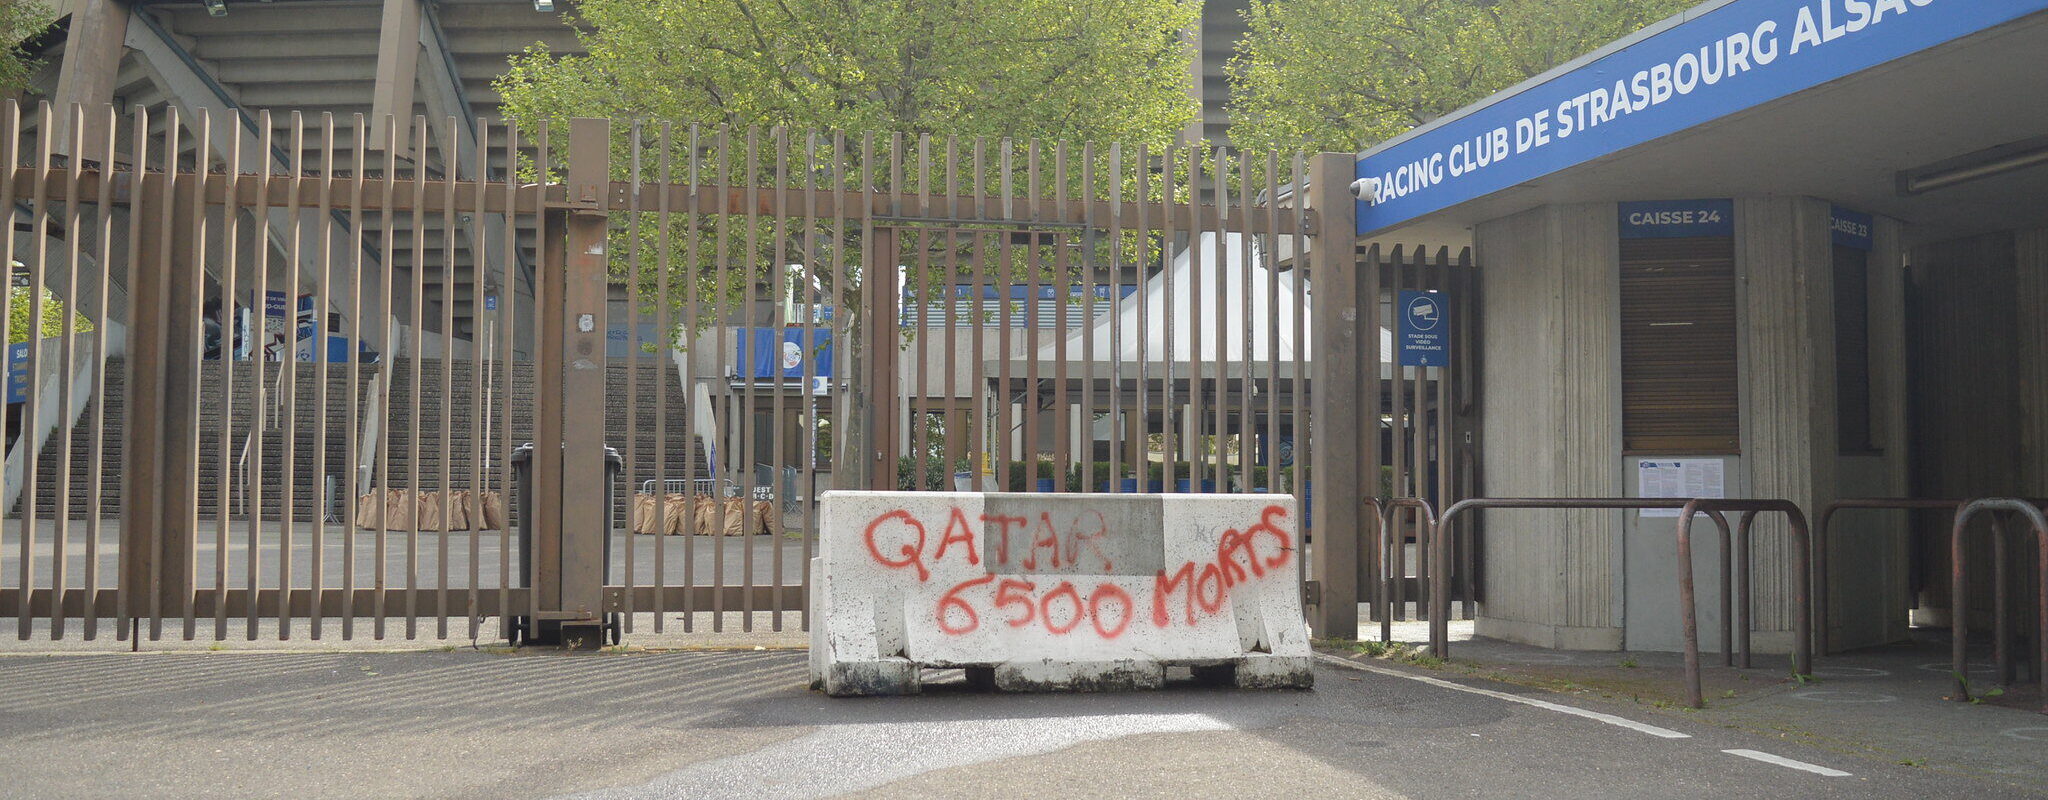 Des dizaines de tags contre le Qatar autour du stade de la Meinau avant Strasbourg-PSG